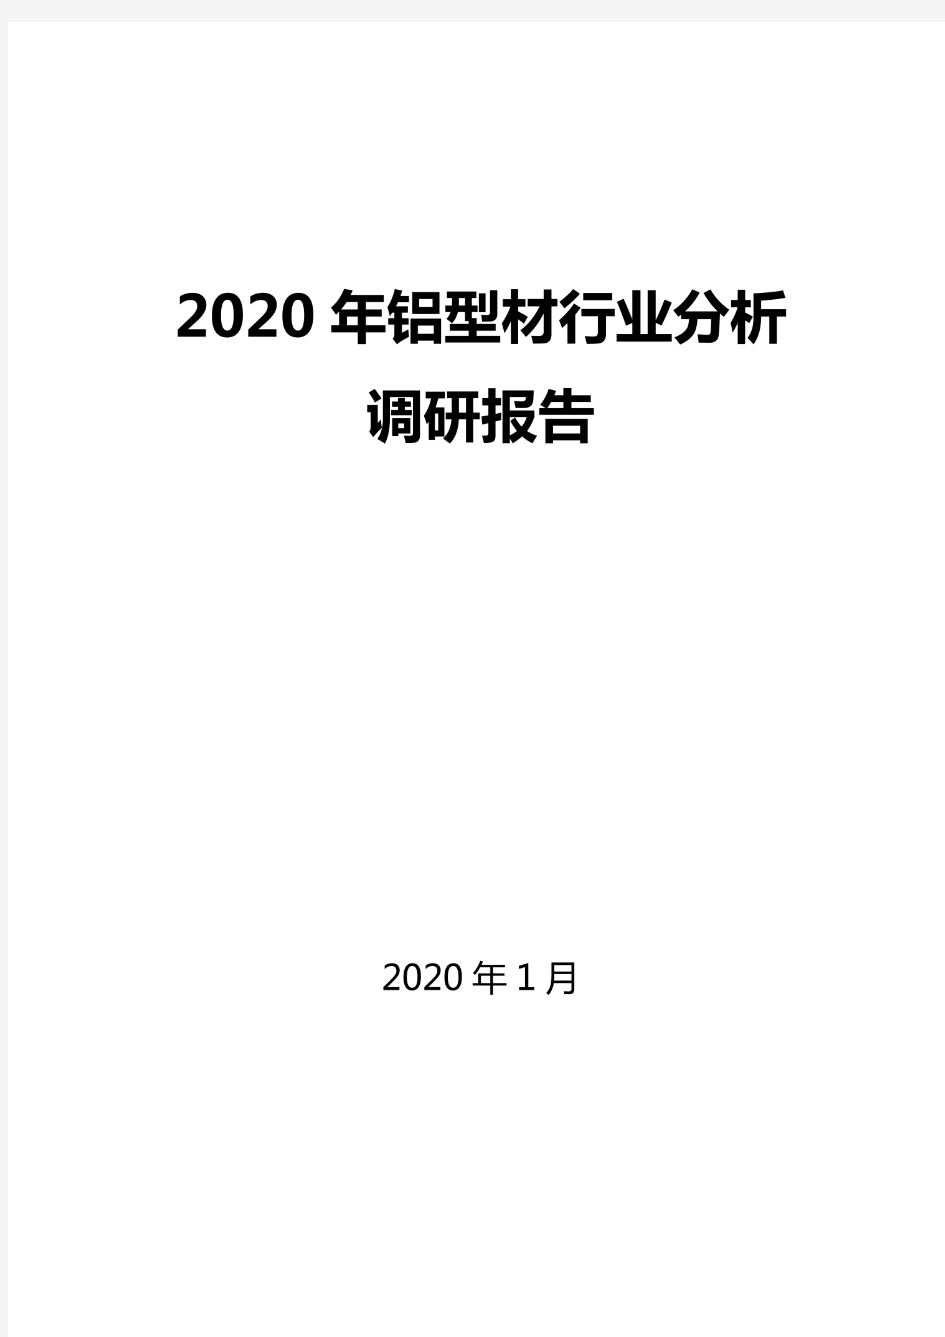 2020铝型材行业分析报告